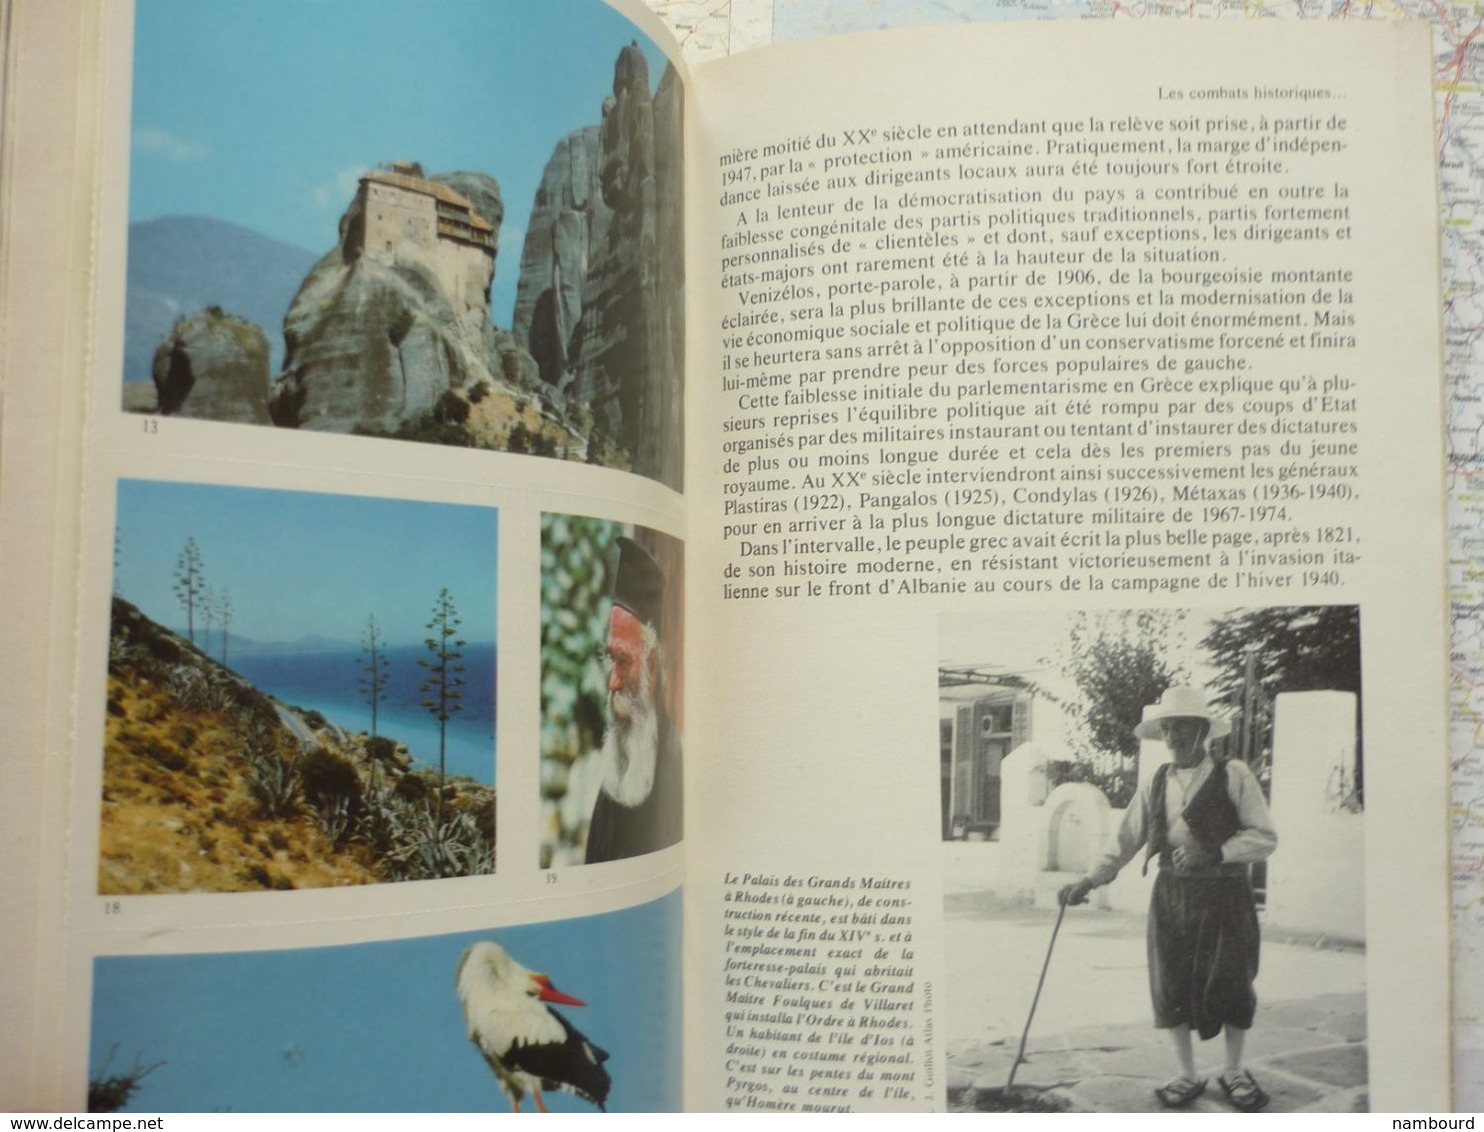 Tour du Monde N°213 La République Hellénique - L'Acropole - Le Fou de Bassan Juin 1977